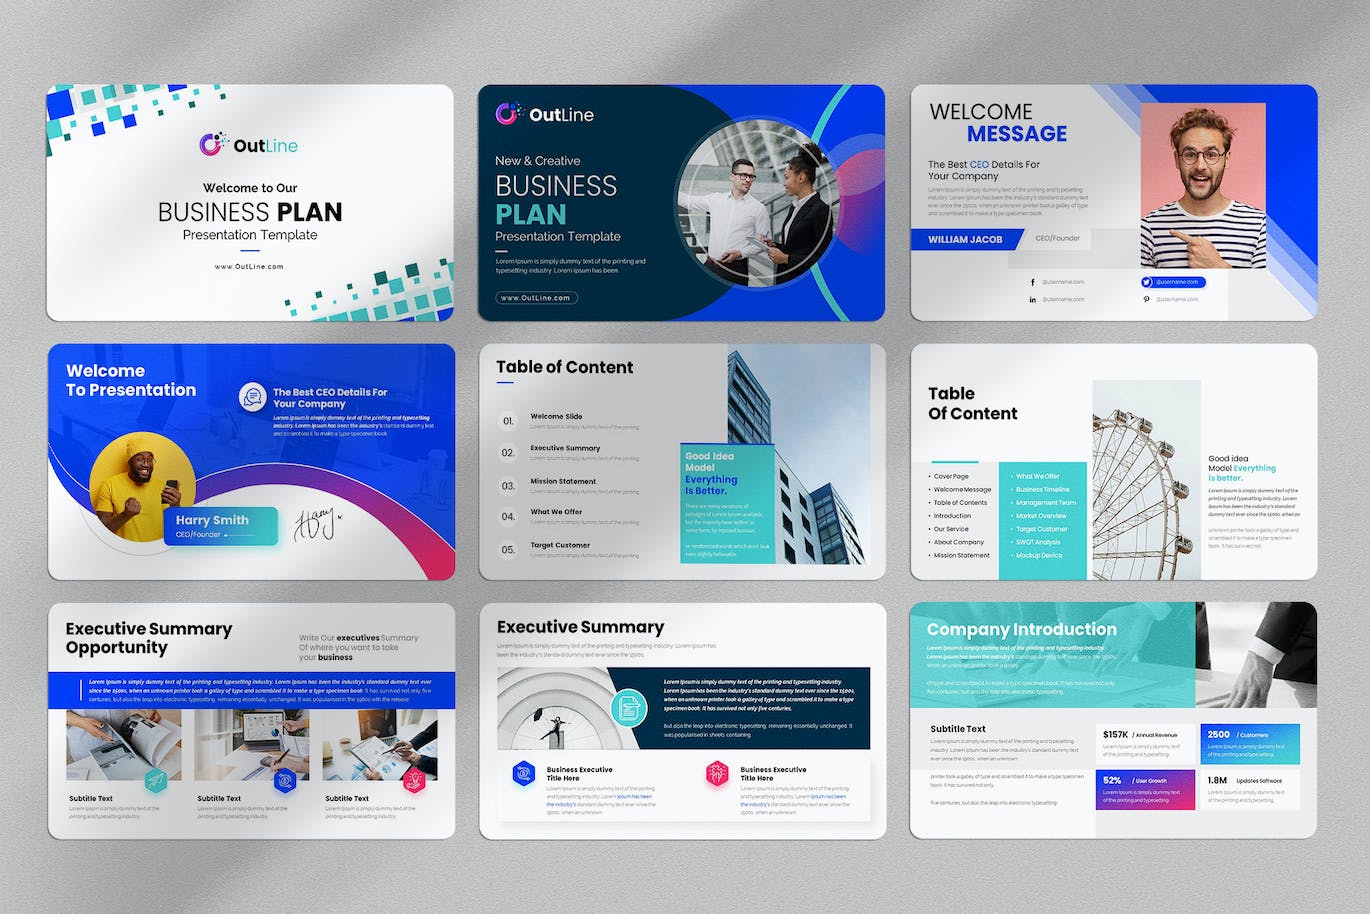 商业计划方案谷歌幻灯片演示文稿模板 Business Plan Google Slides Presentation Template 幻灯图表 第5张